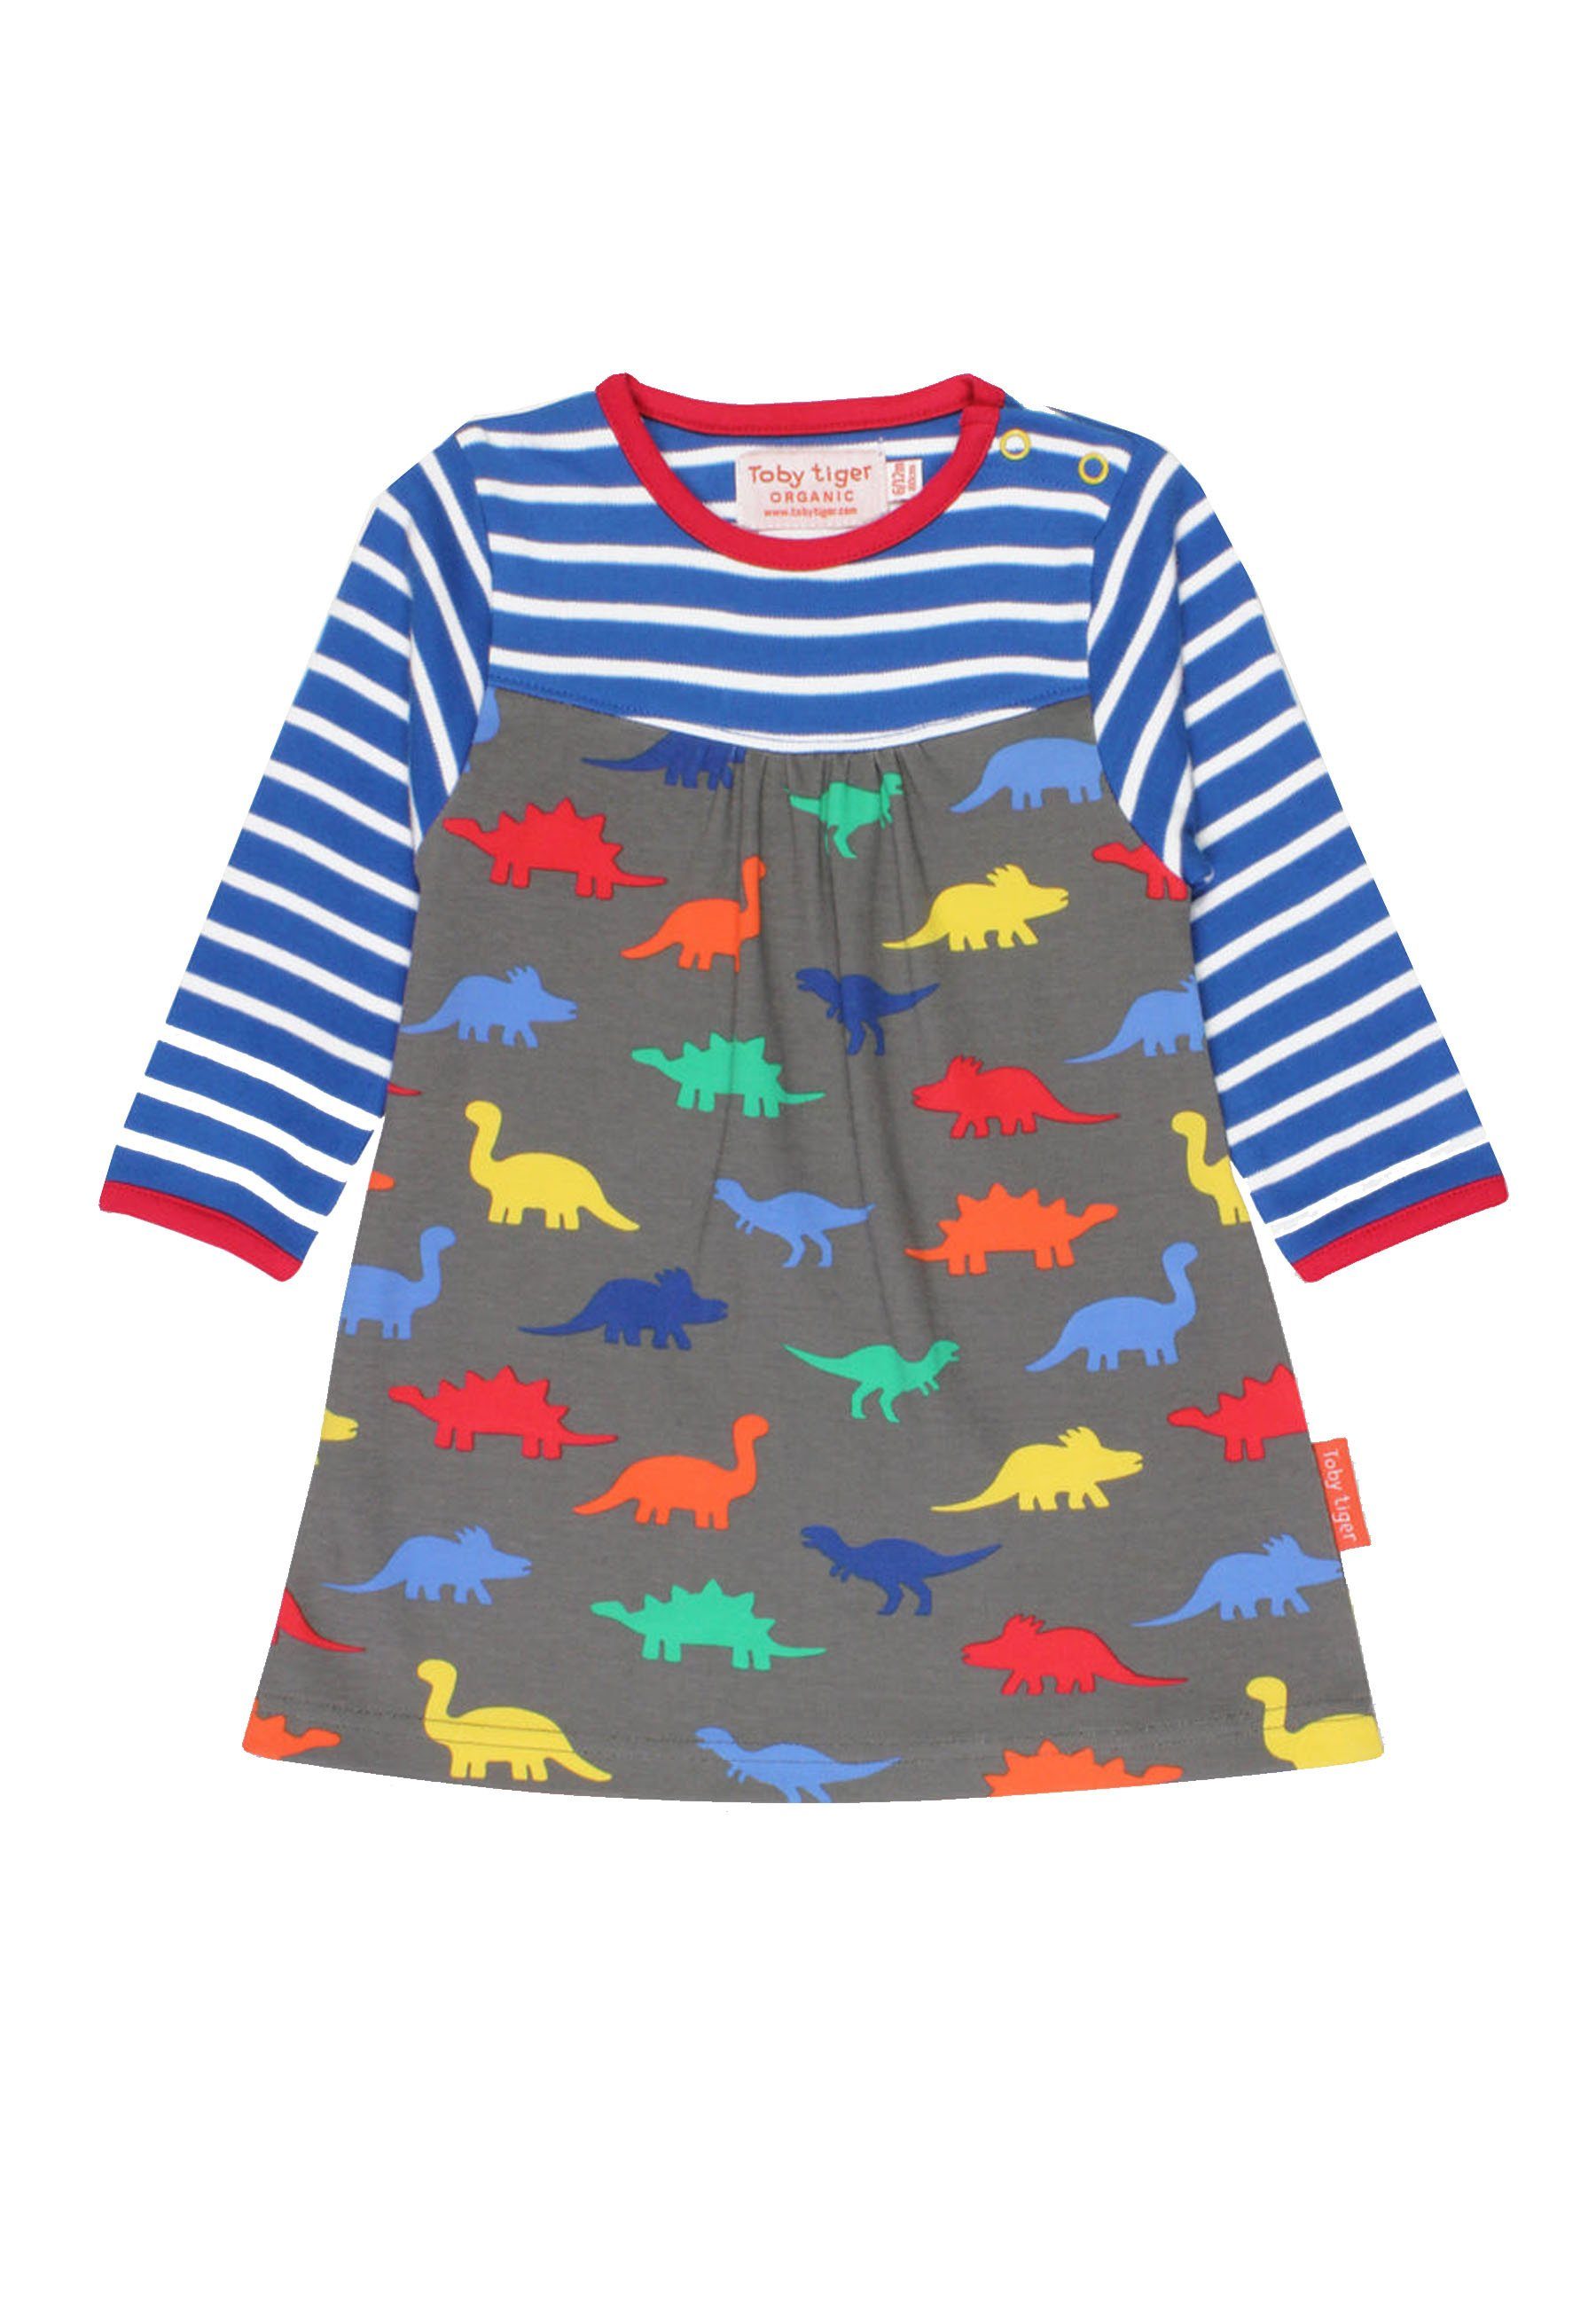 Toby Tiger Shirtkleid Kleid mit Dinosaurier und Print Streifen